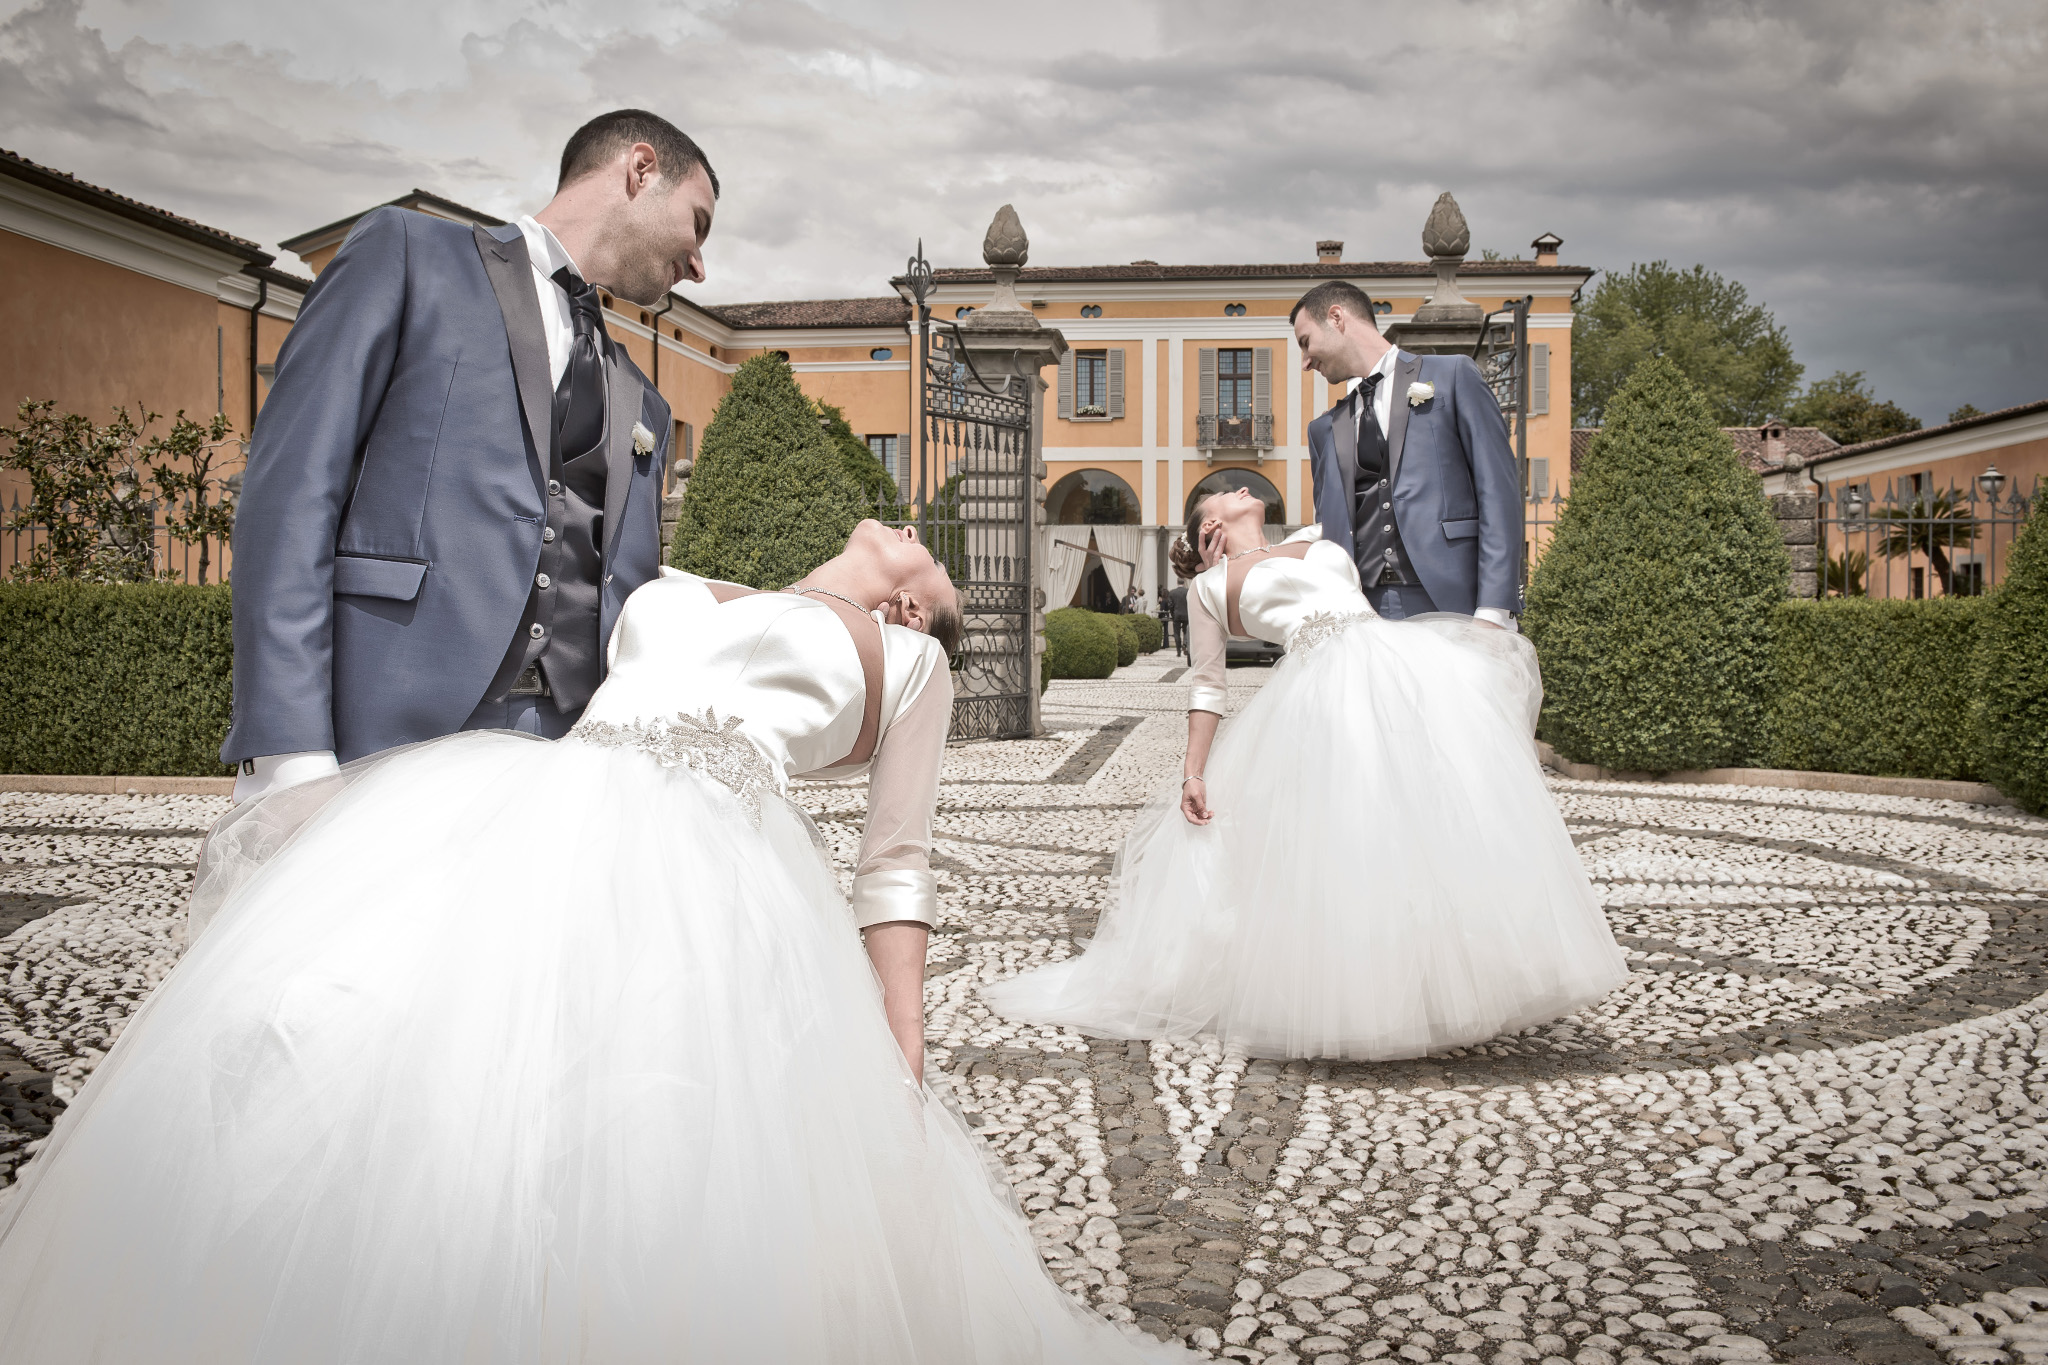 Wedding photographer, Brescia